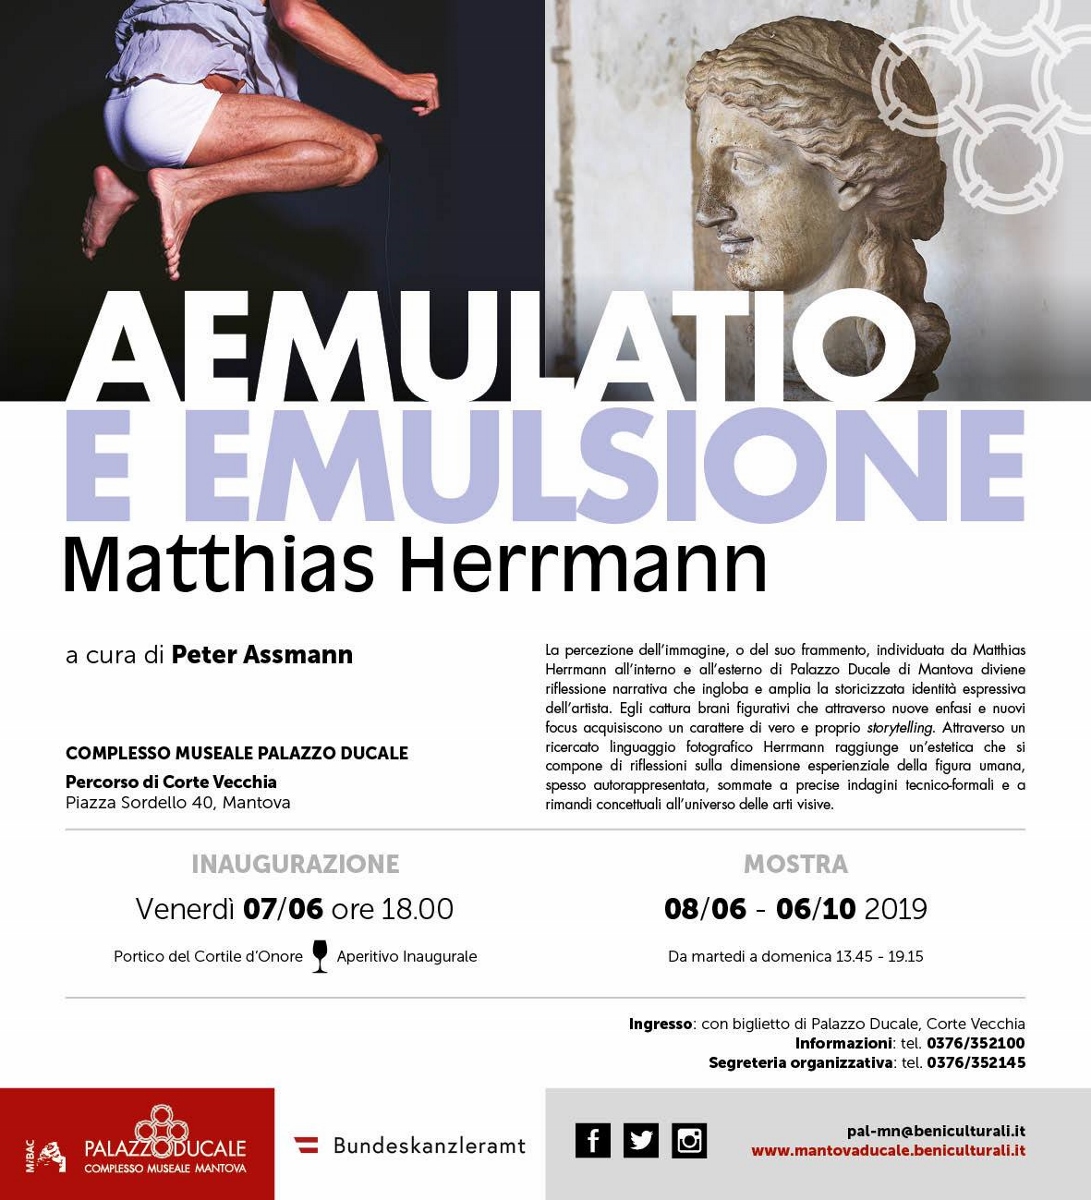 Matthias Herrmann – Aemulatio e emulsione